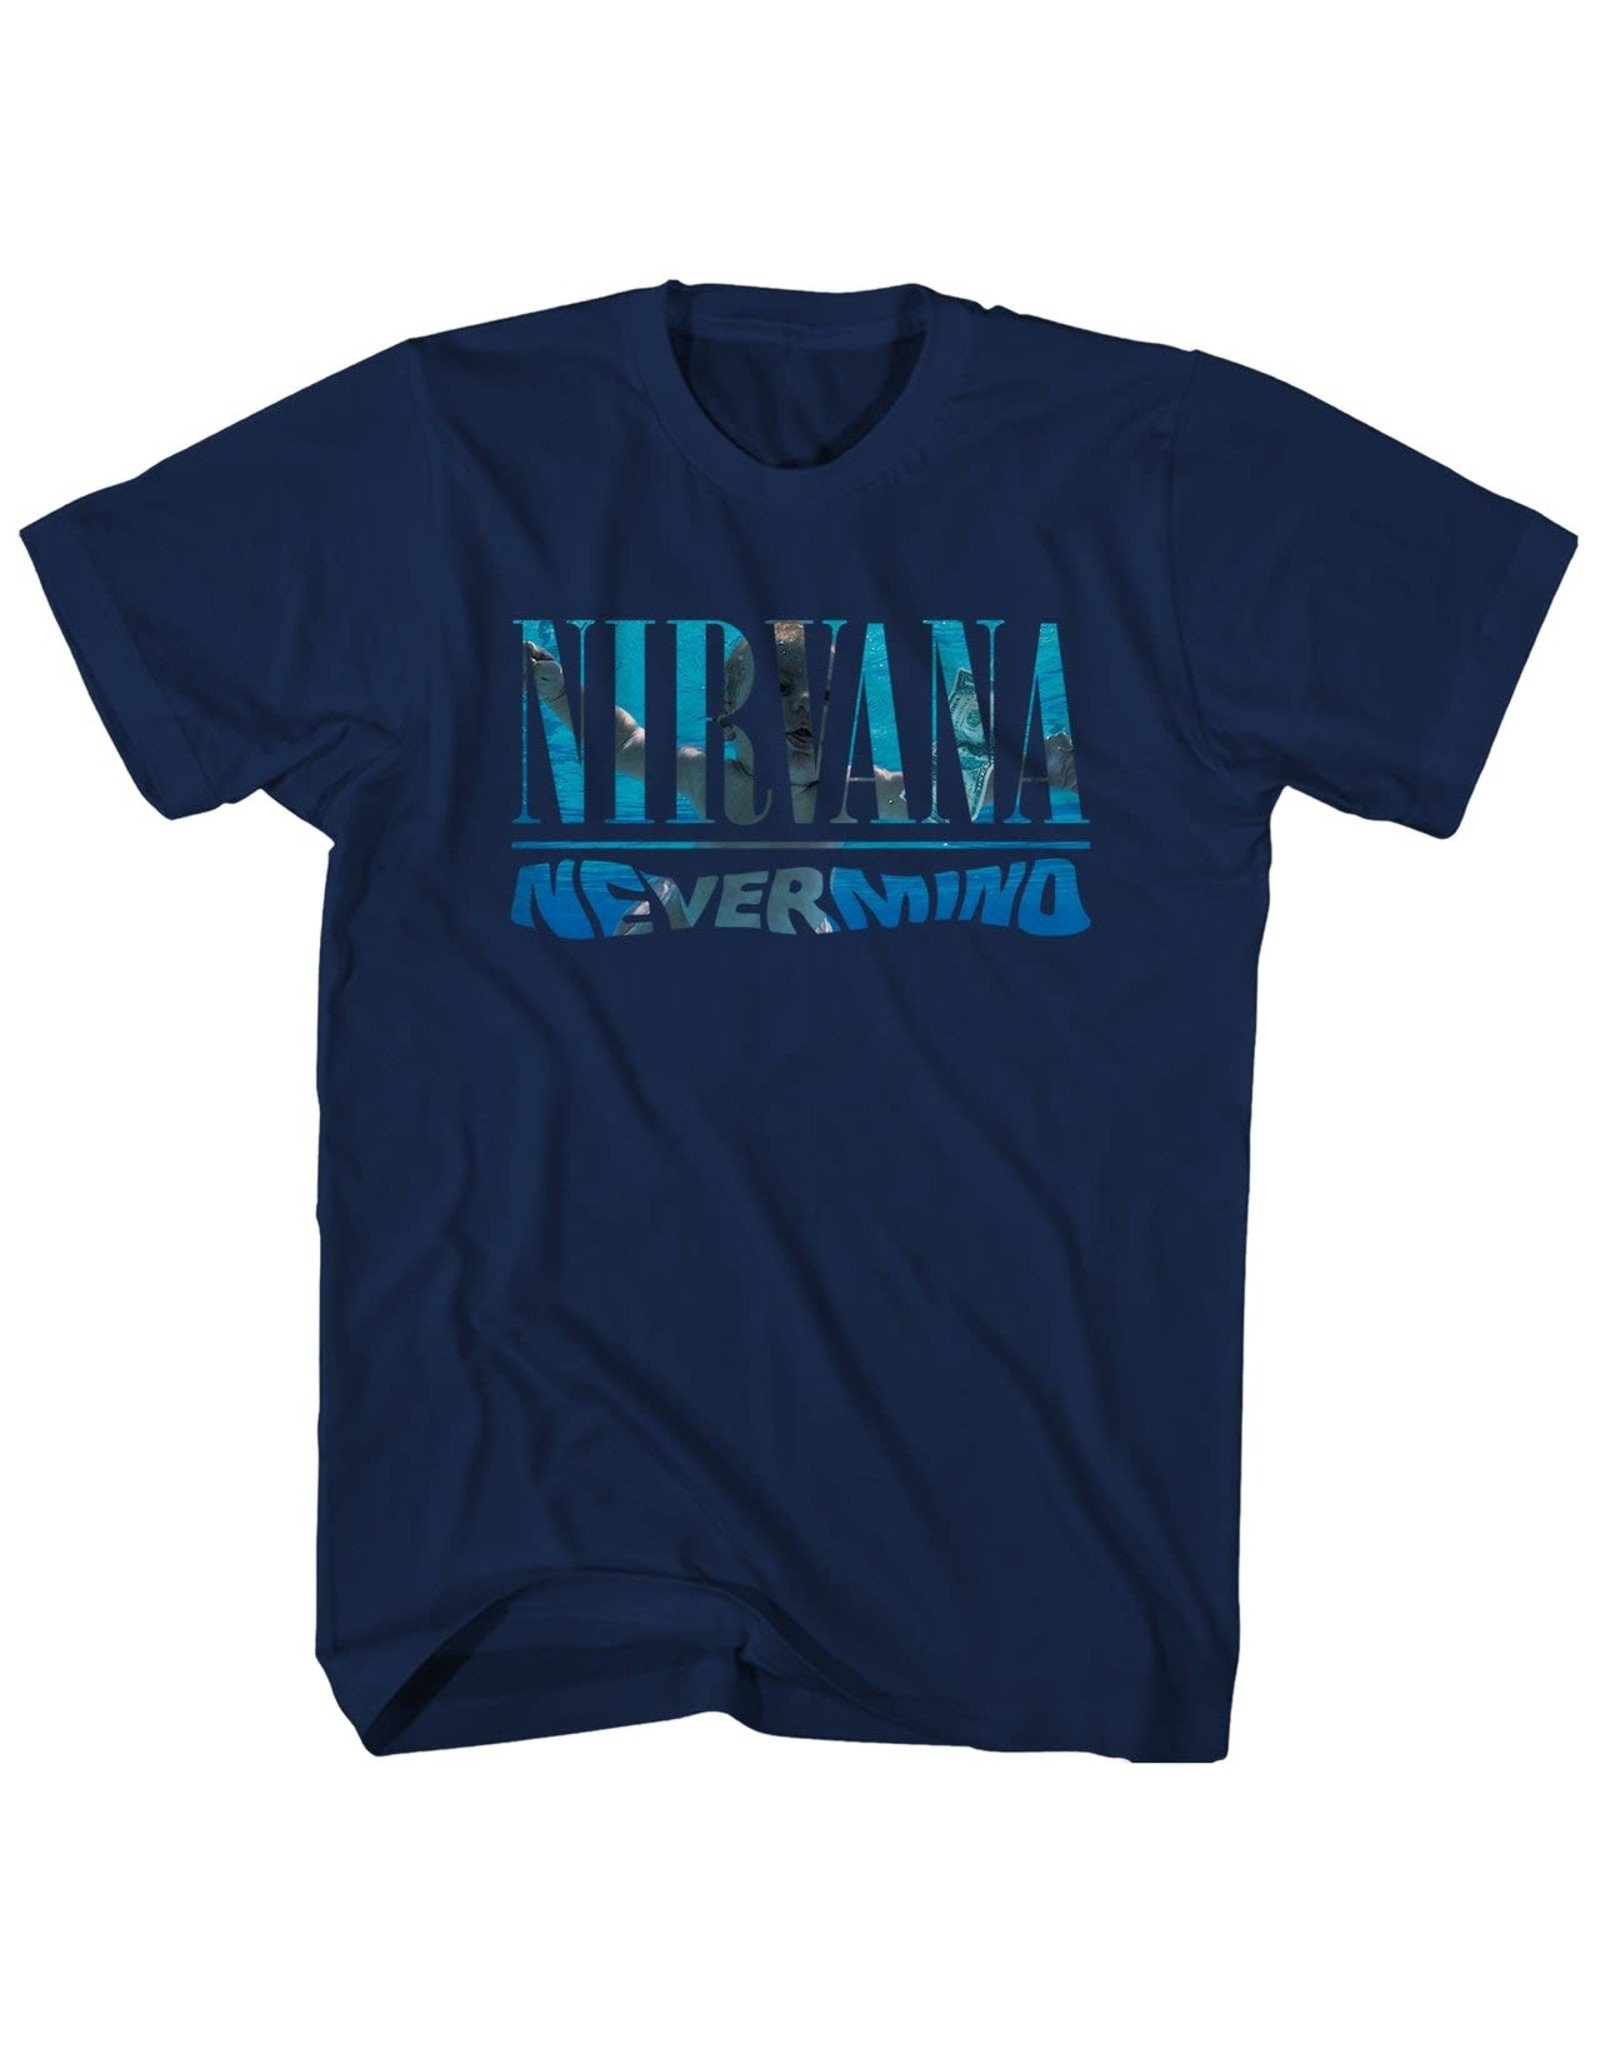 Nirvana / Nevermind Tee